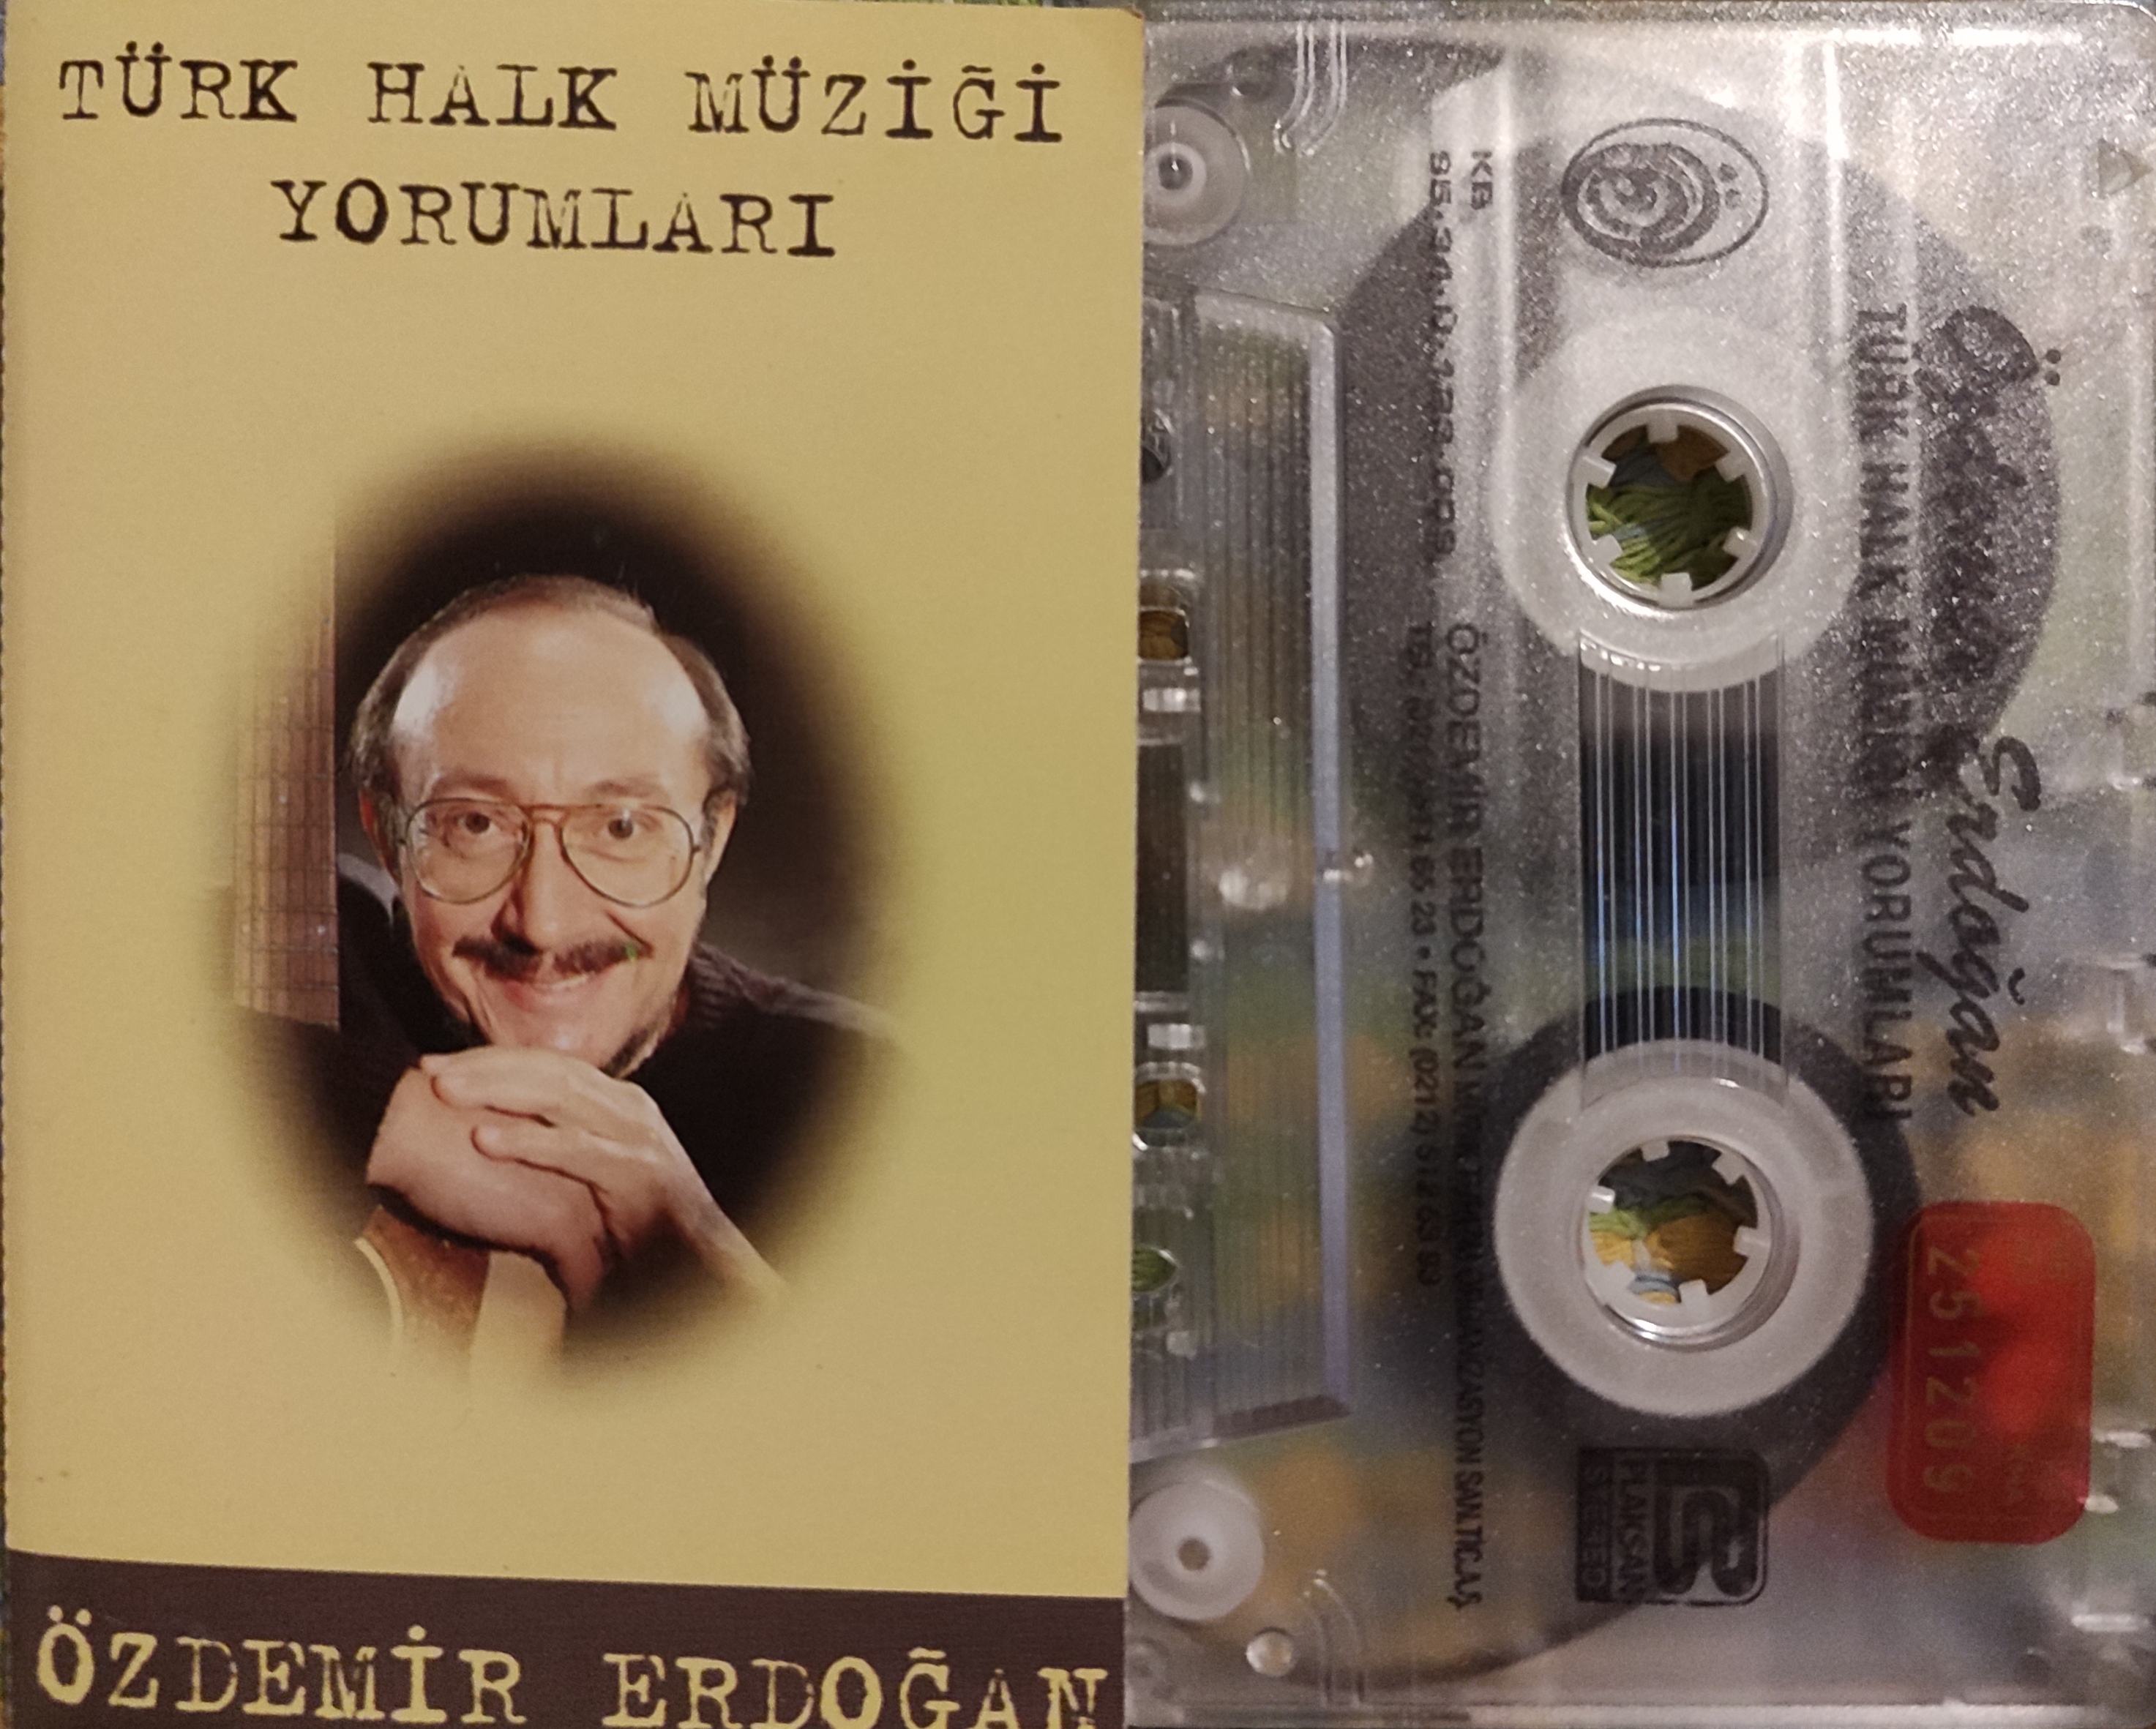 ÖZDEMİR ERDOĞAN - Türk Halk Müziği Yorumları  - 1995 Türkiye Basım Kaset Albüm 2. el